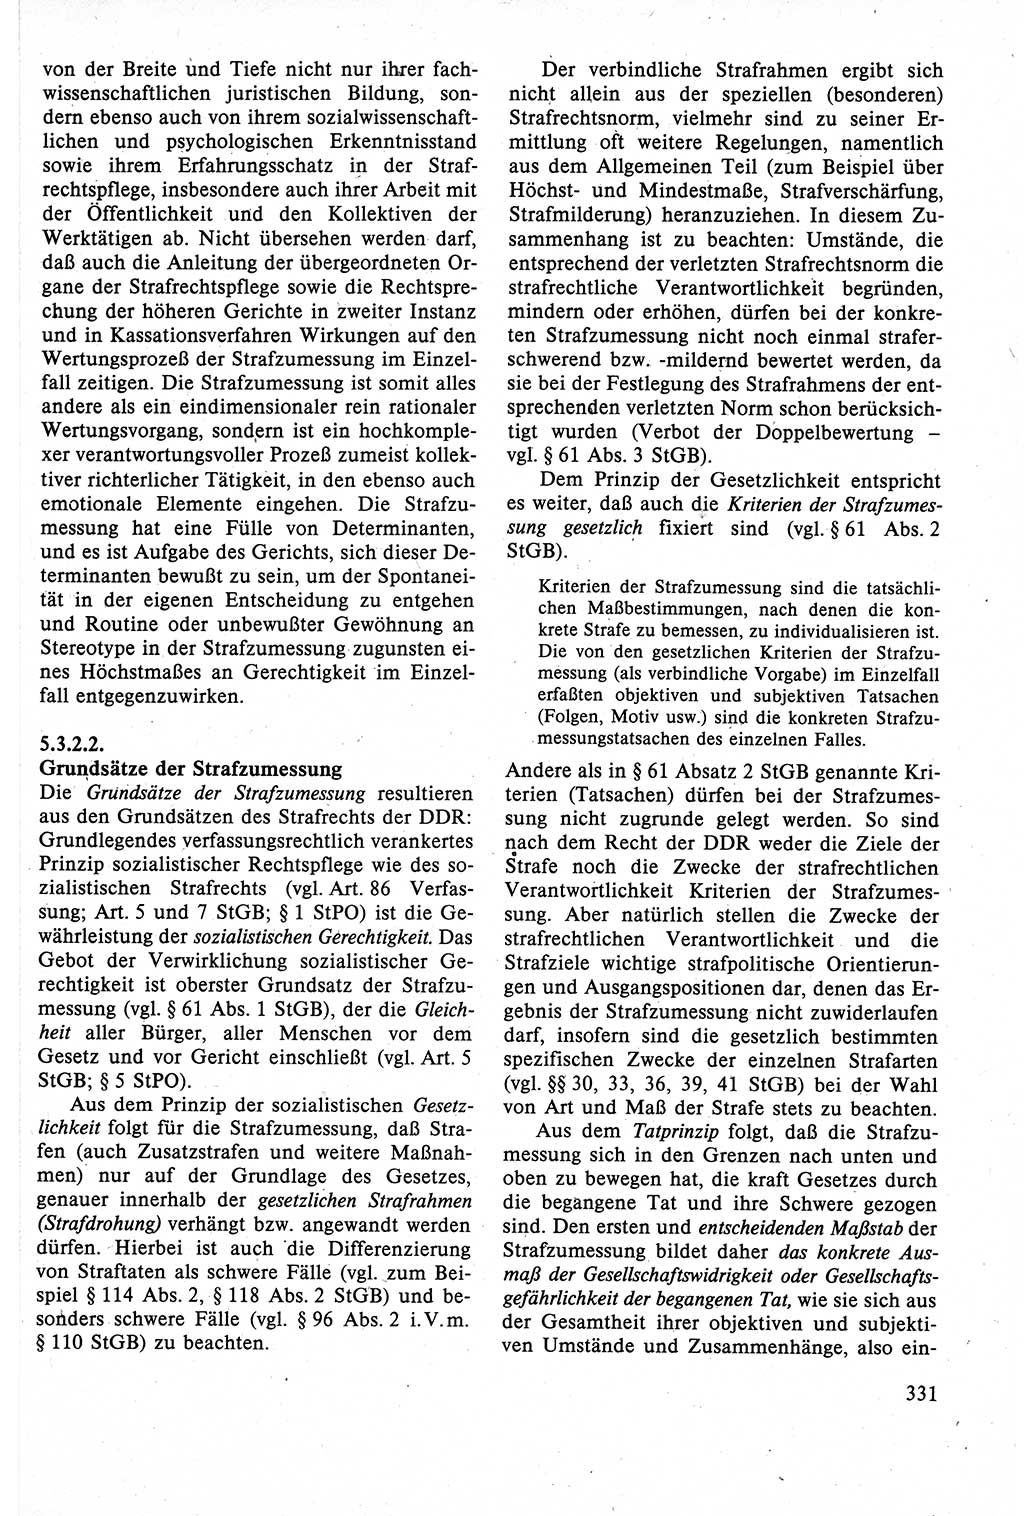 Strafrecht der DDR (Deutsche Demokratische Republik), Lehrbuch 1988, Seite 331 (Strafr. DDR Lb. 1988, S. 331)